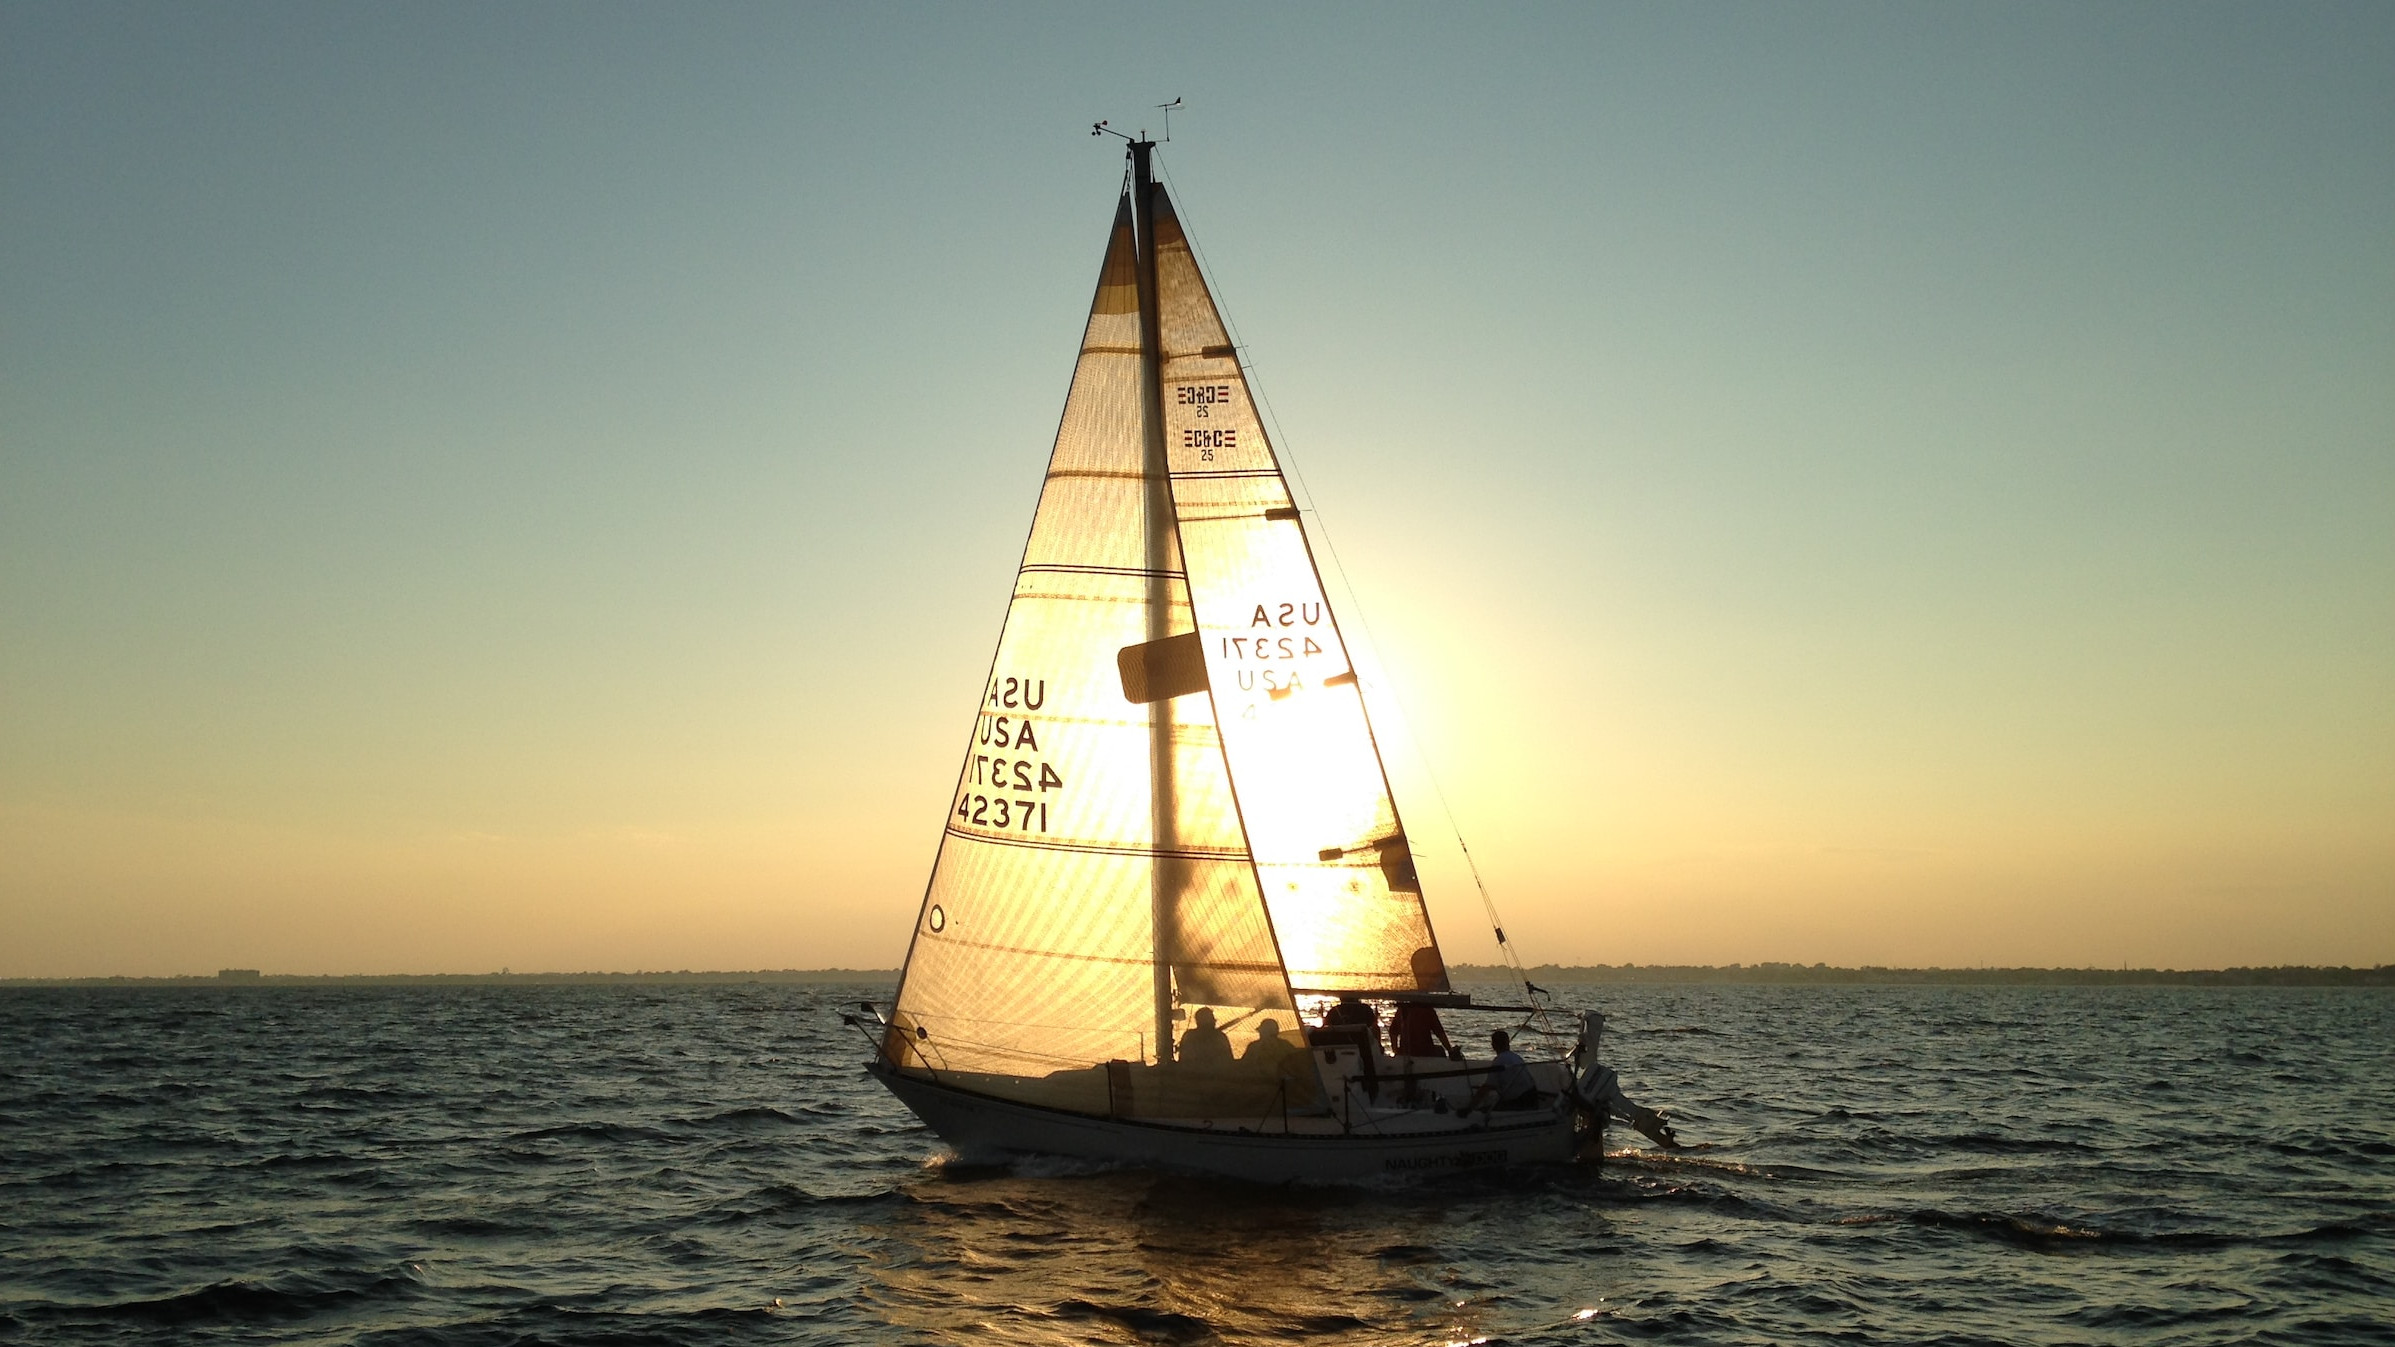 Menschen sitzen zusammen auf einem Segelboot im Sonnenuntergang.